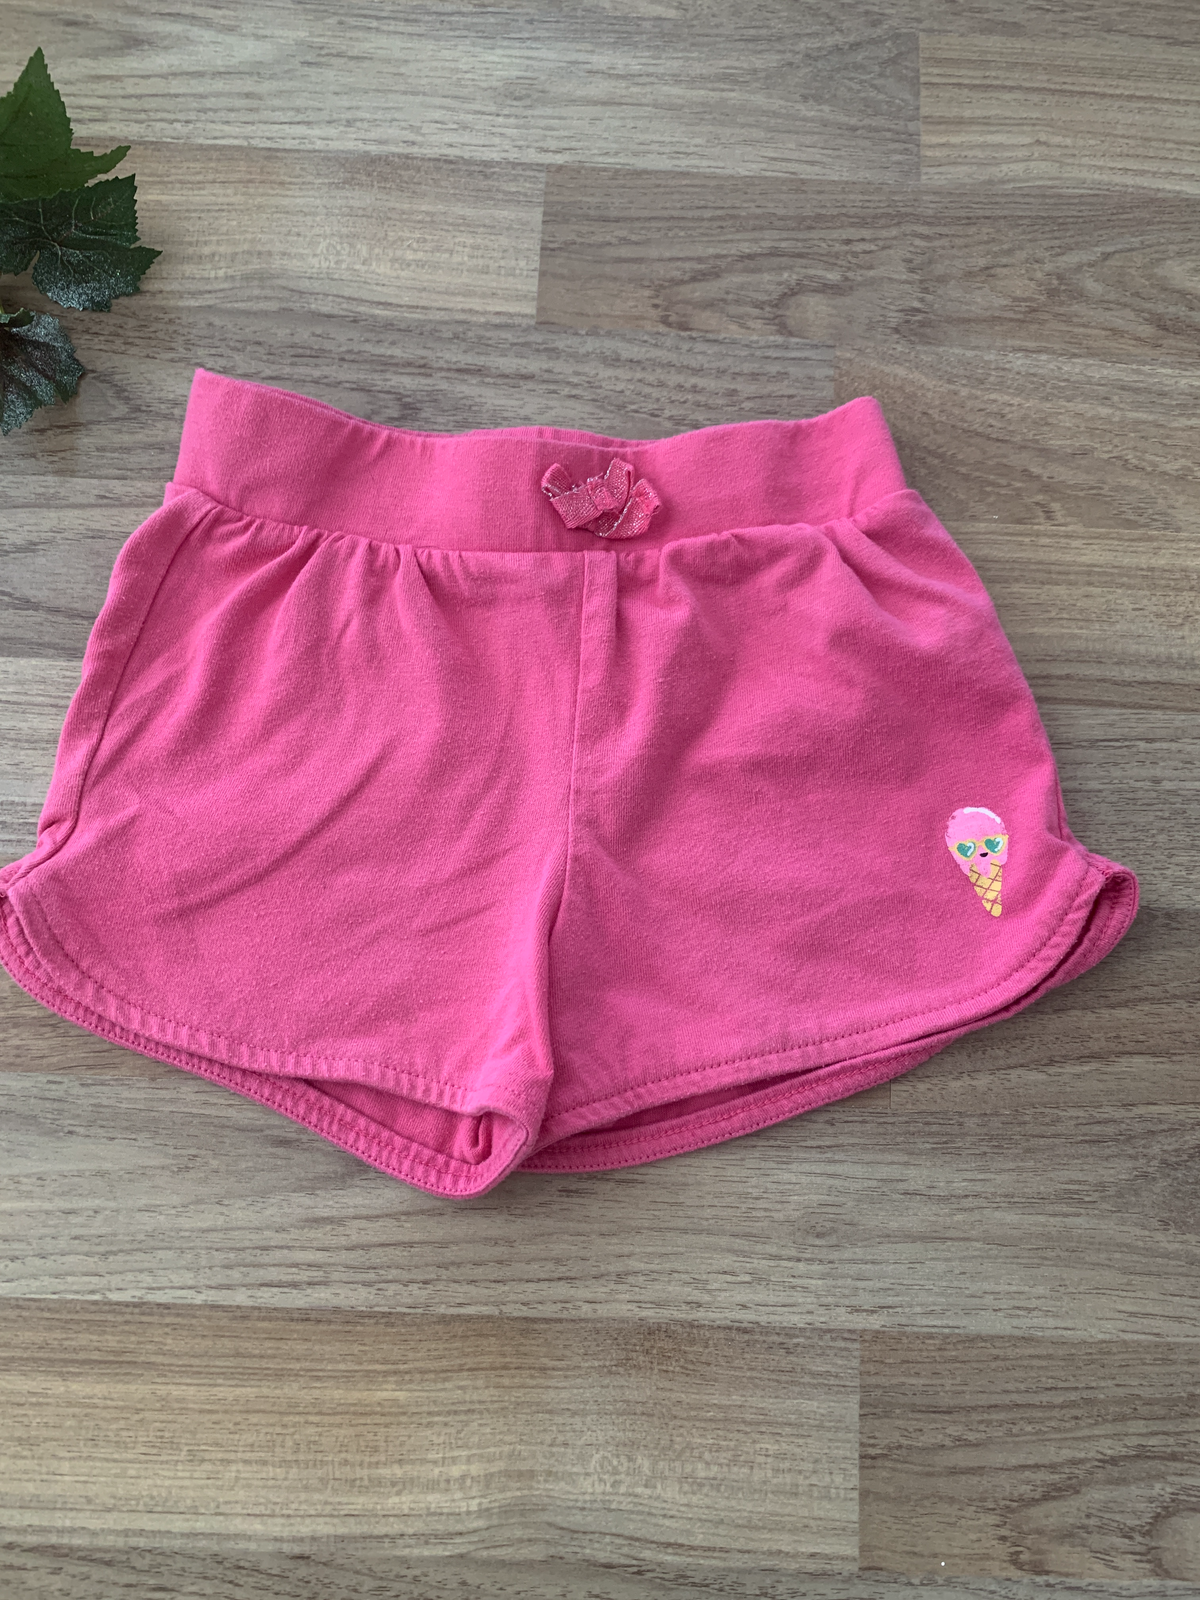 Shorts (Girls Size 4)